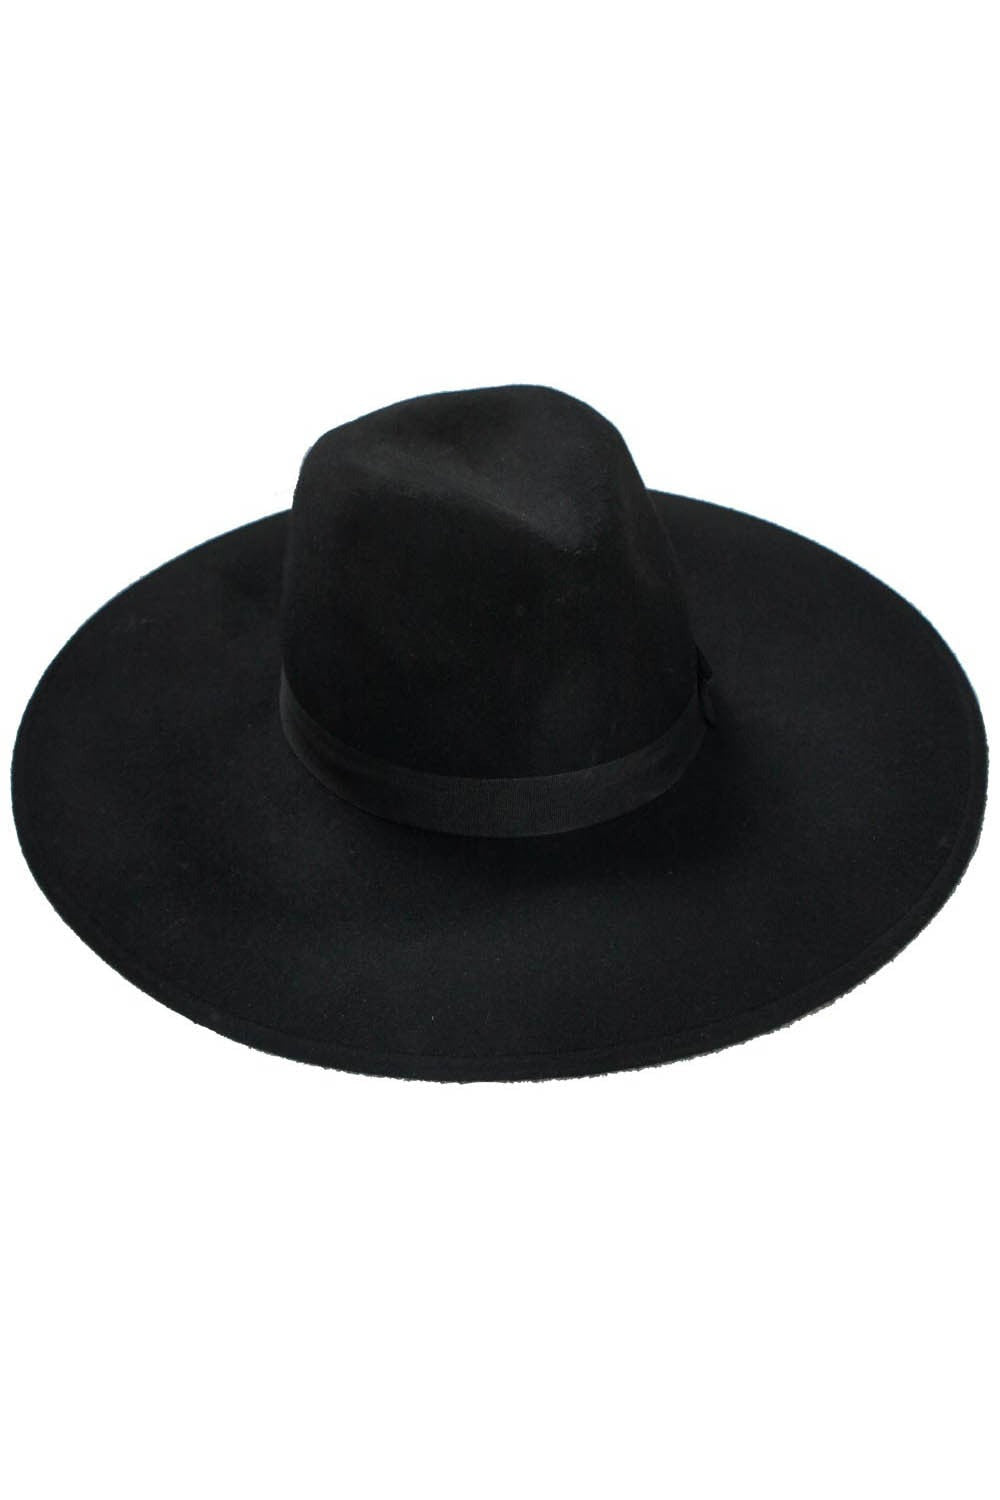 black hat for women